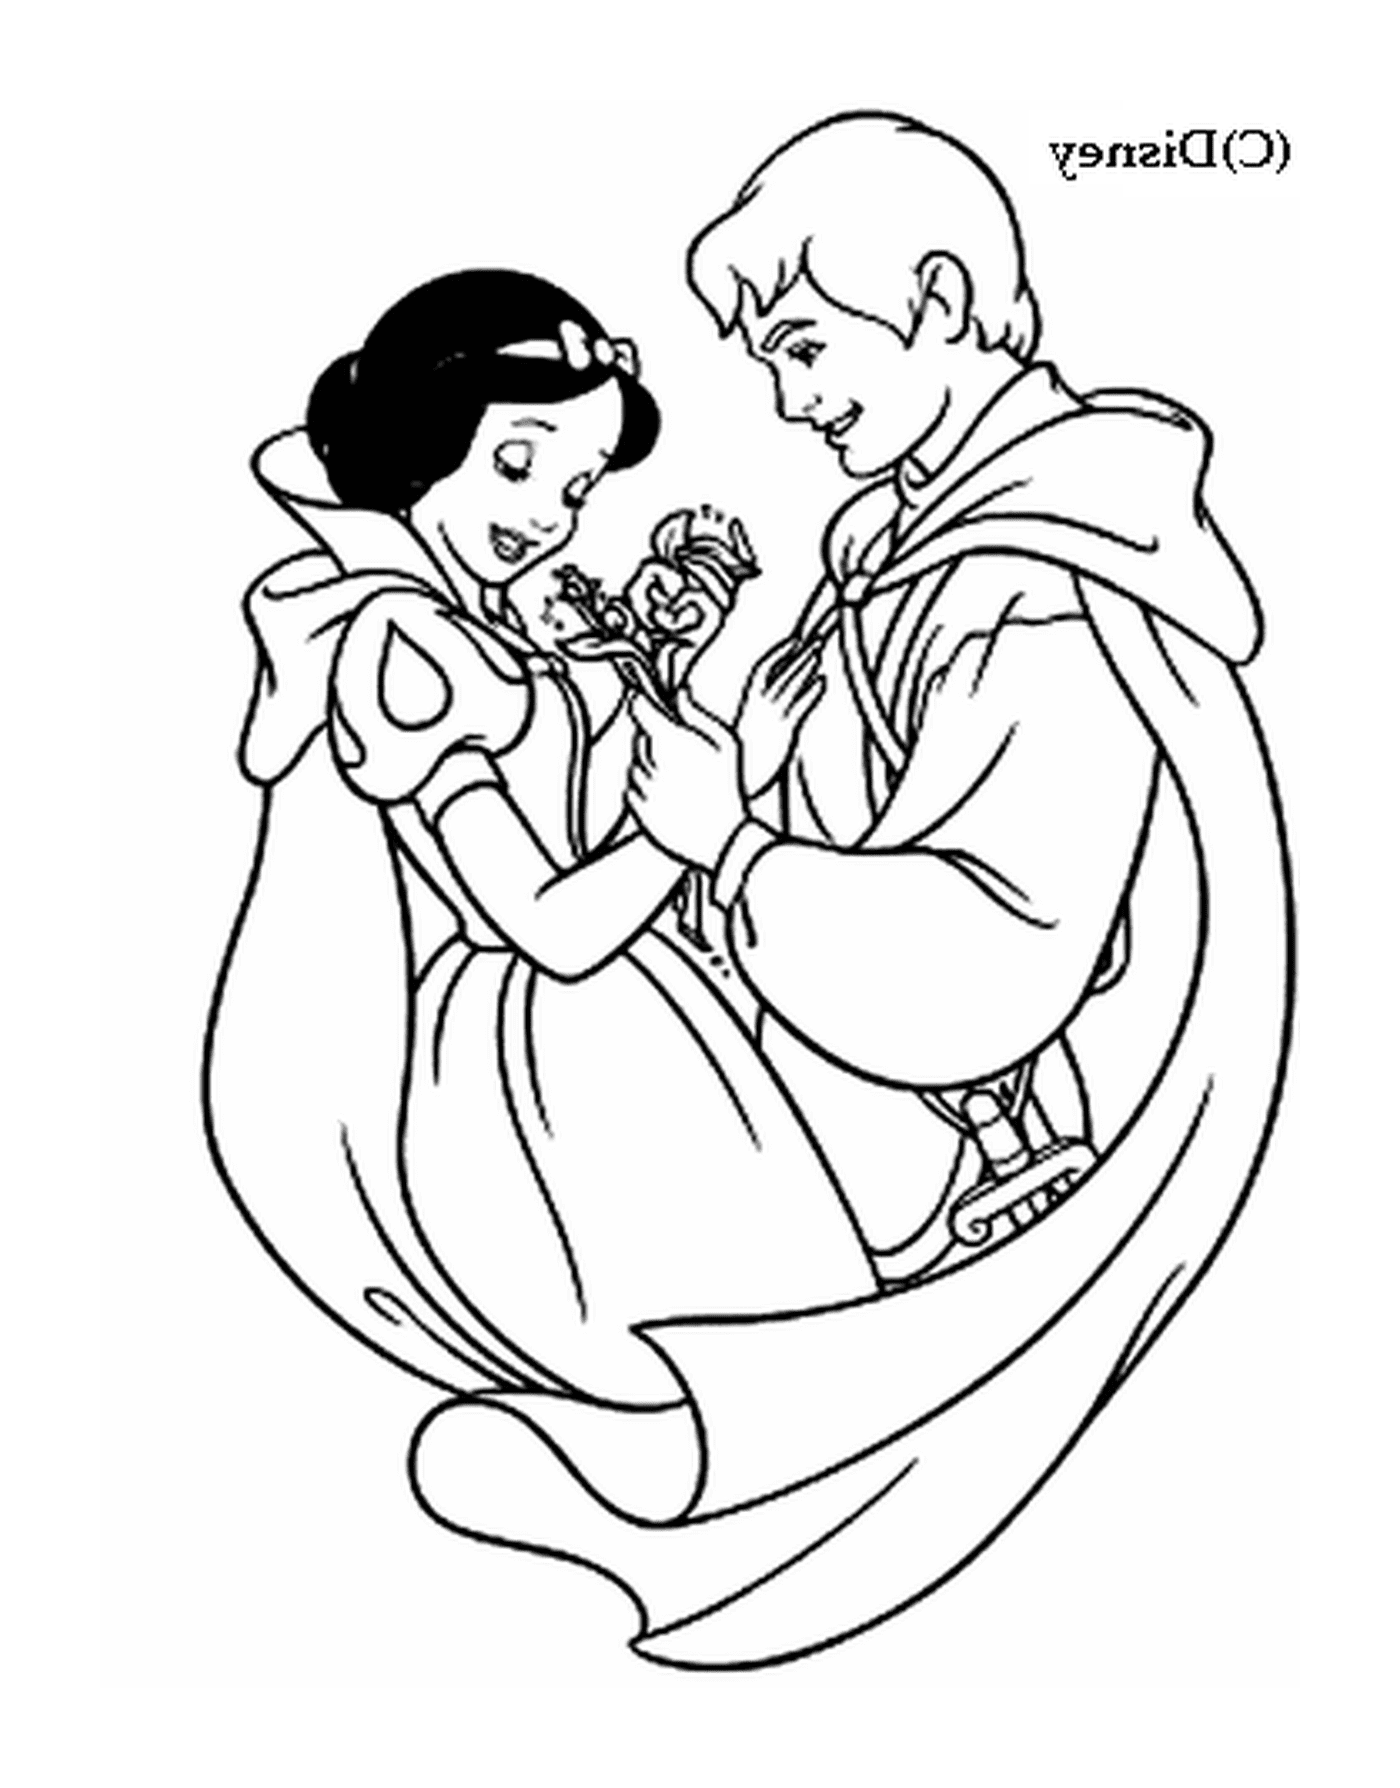  Branca de Neve e Príncipe Encantado 